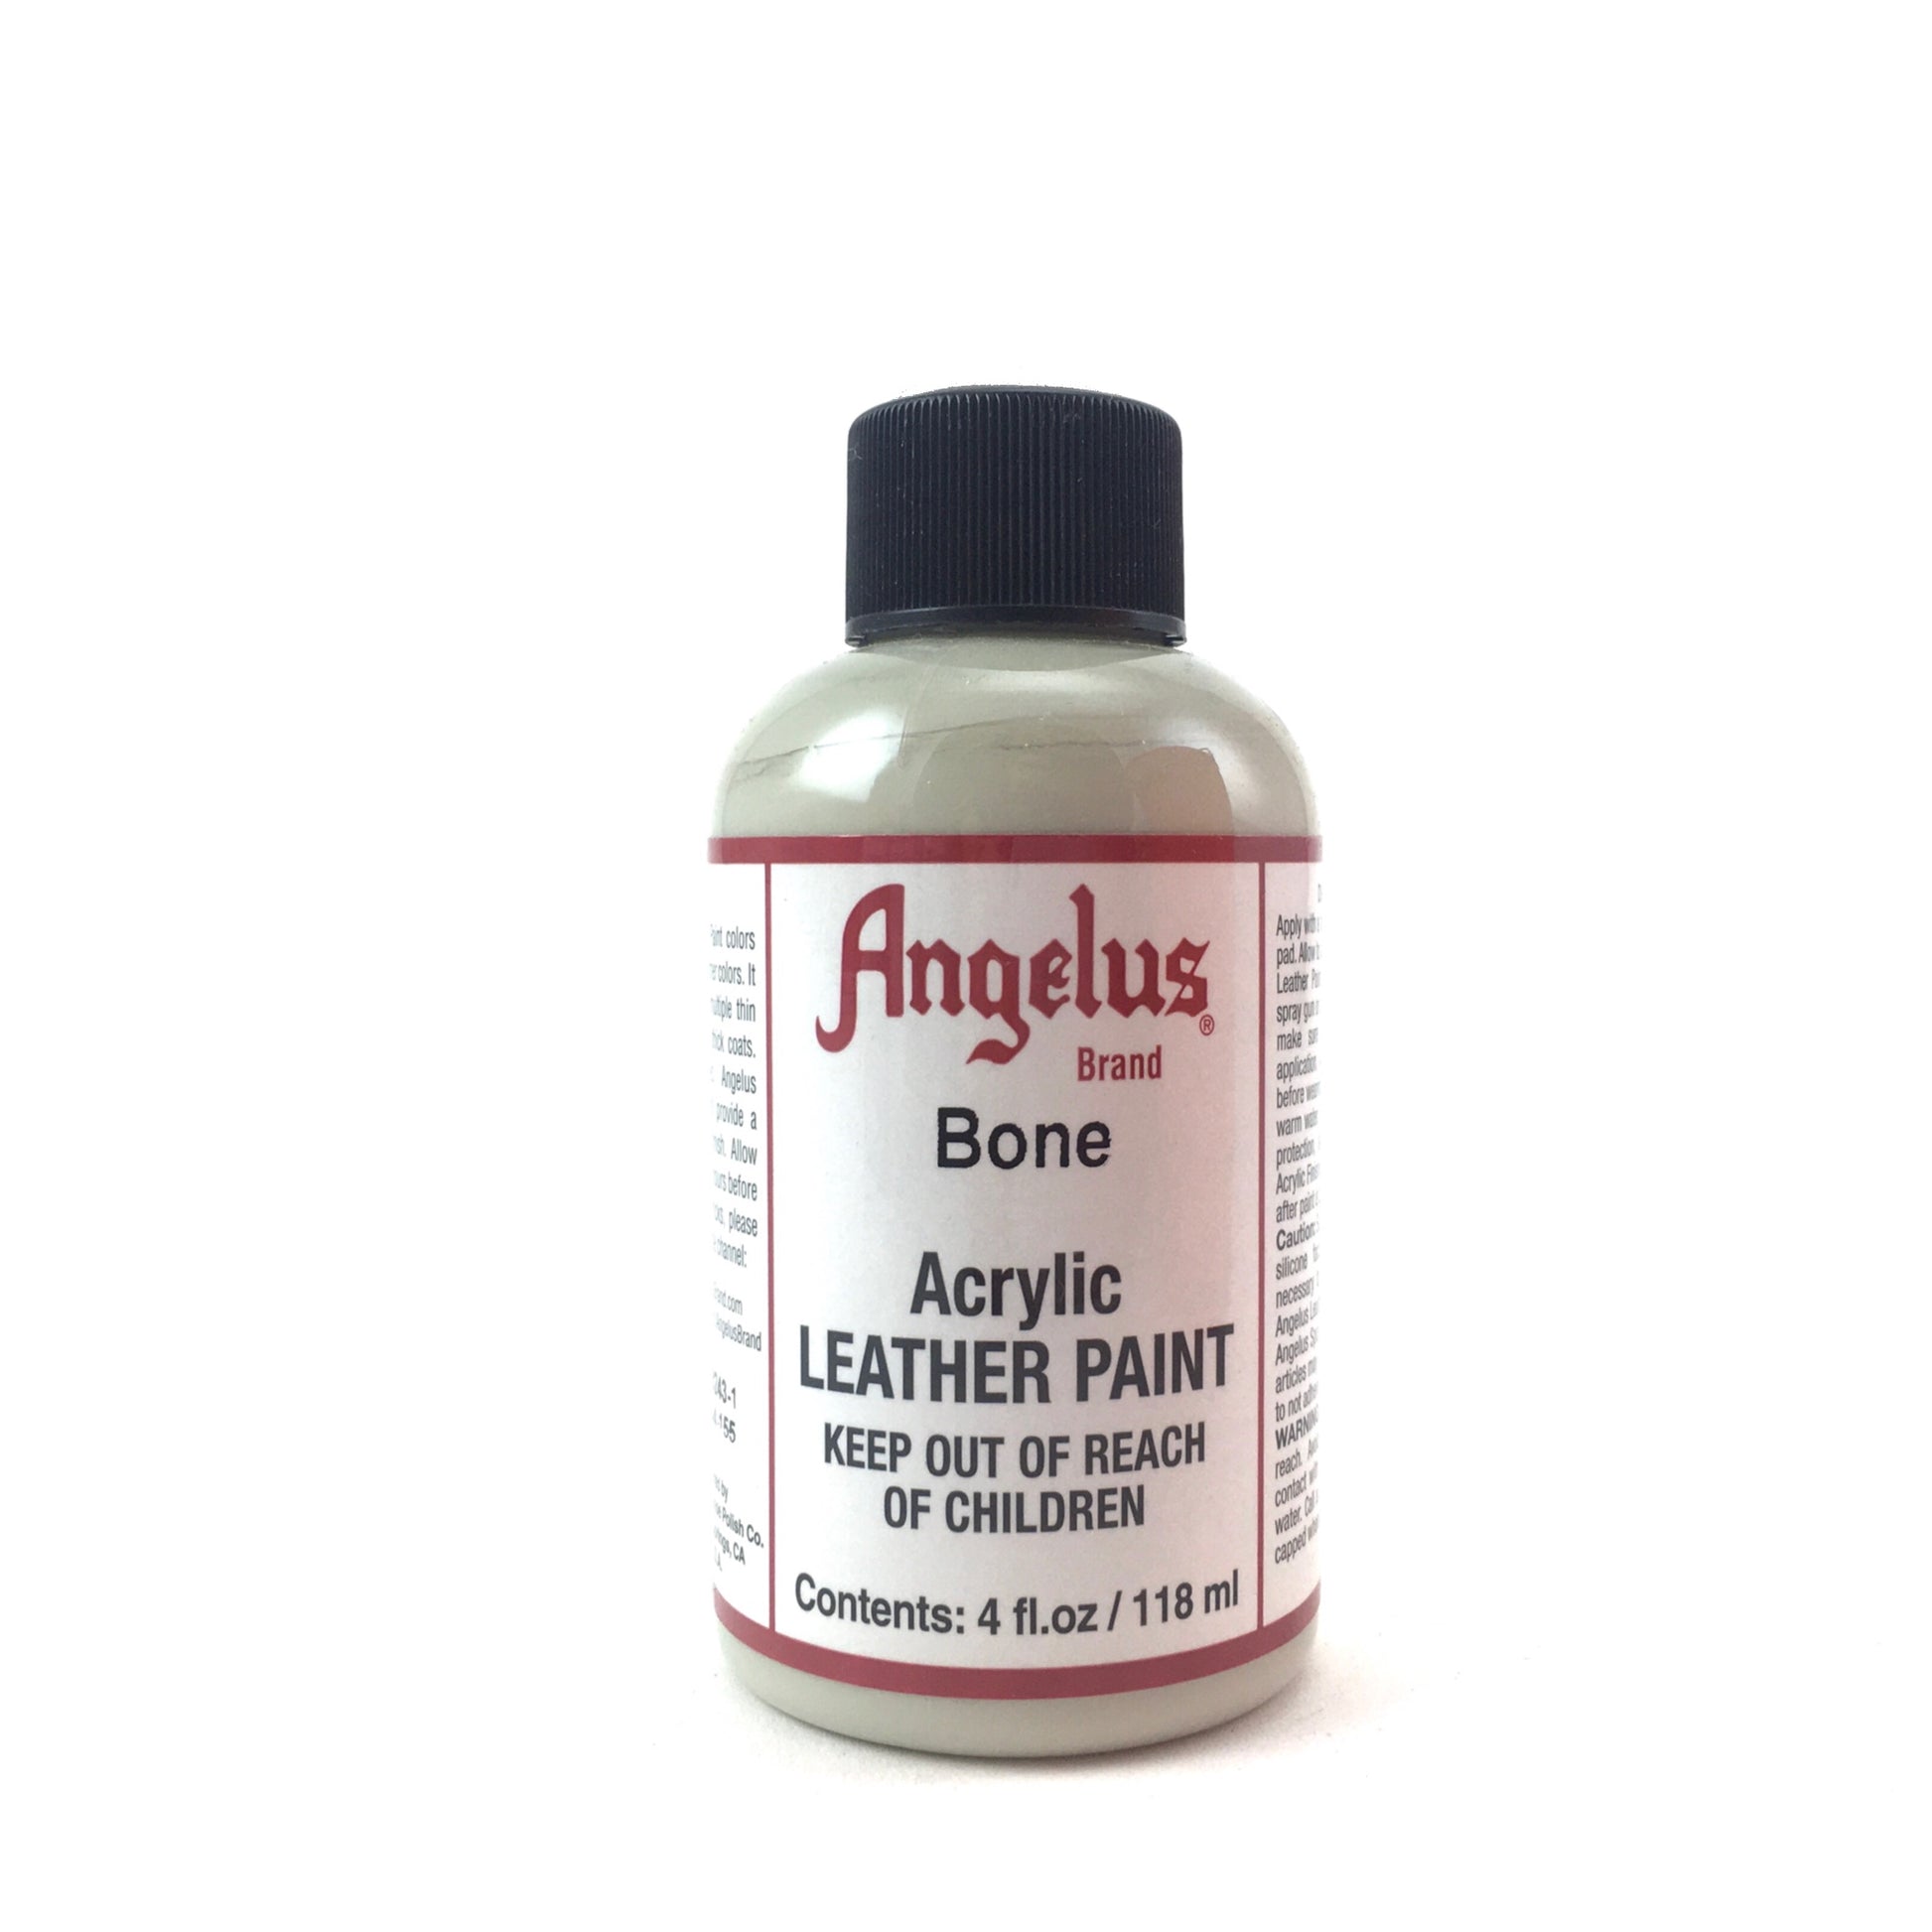 Angelus 1 oz. Acrylic Leather Paint - Black